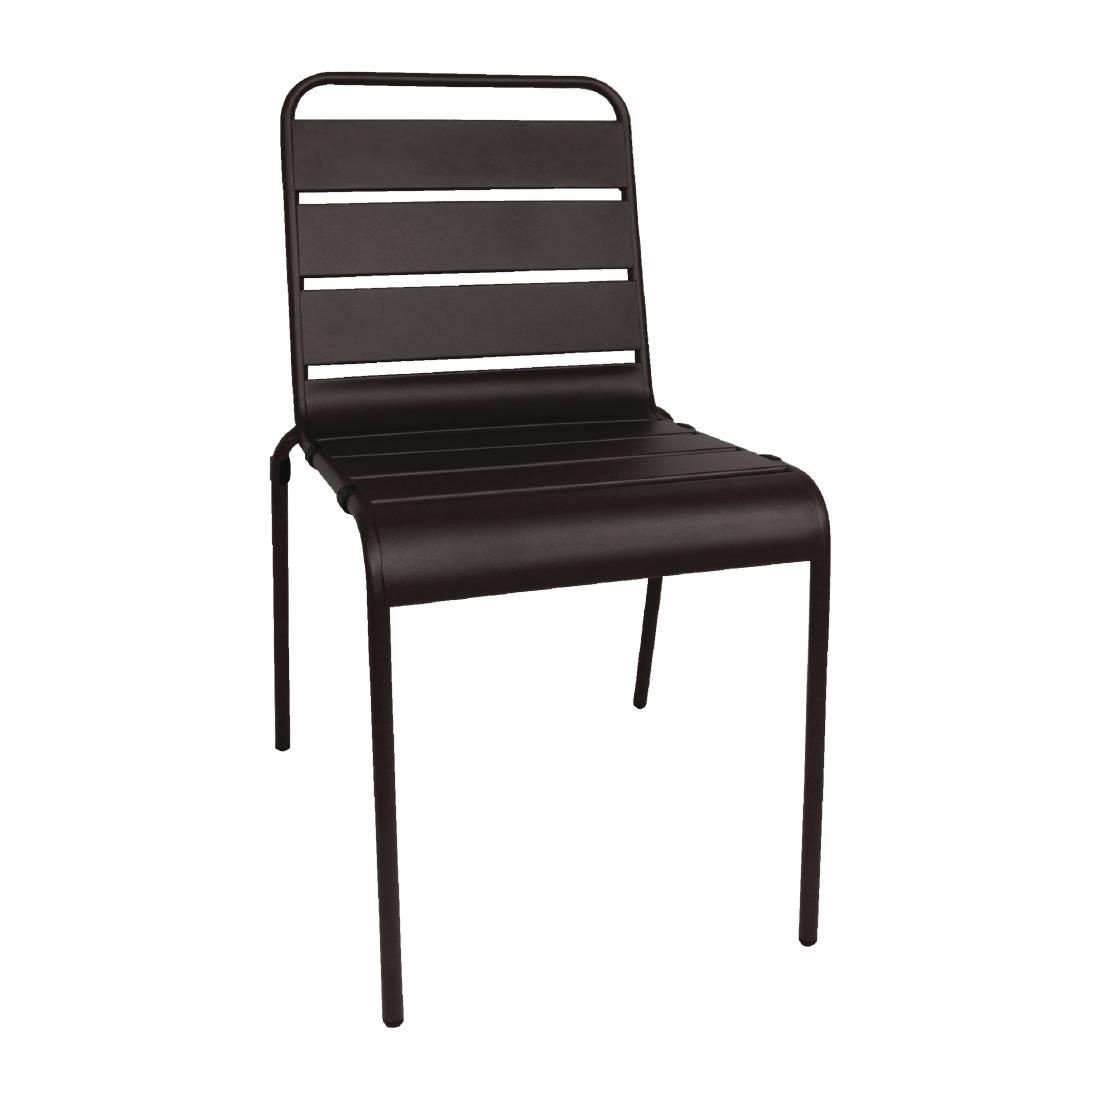 Slatted Steel Chair - Black